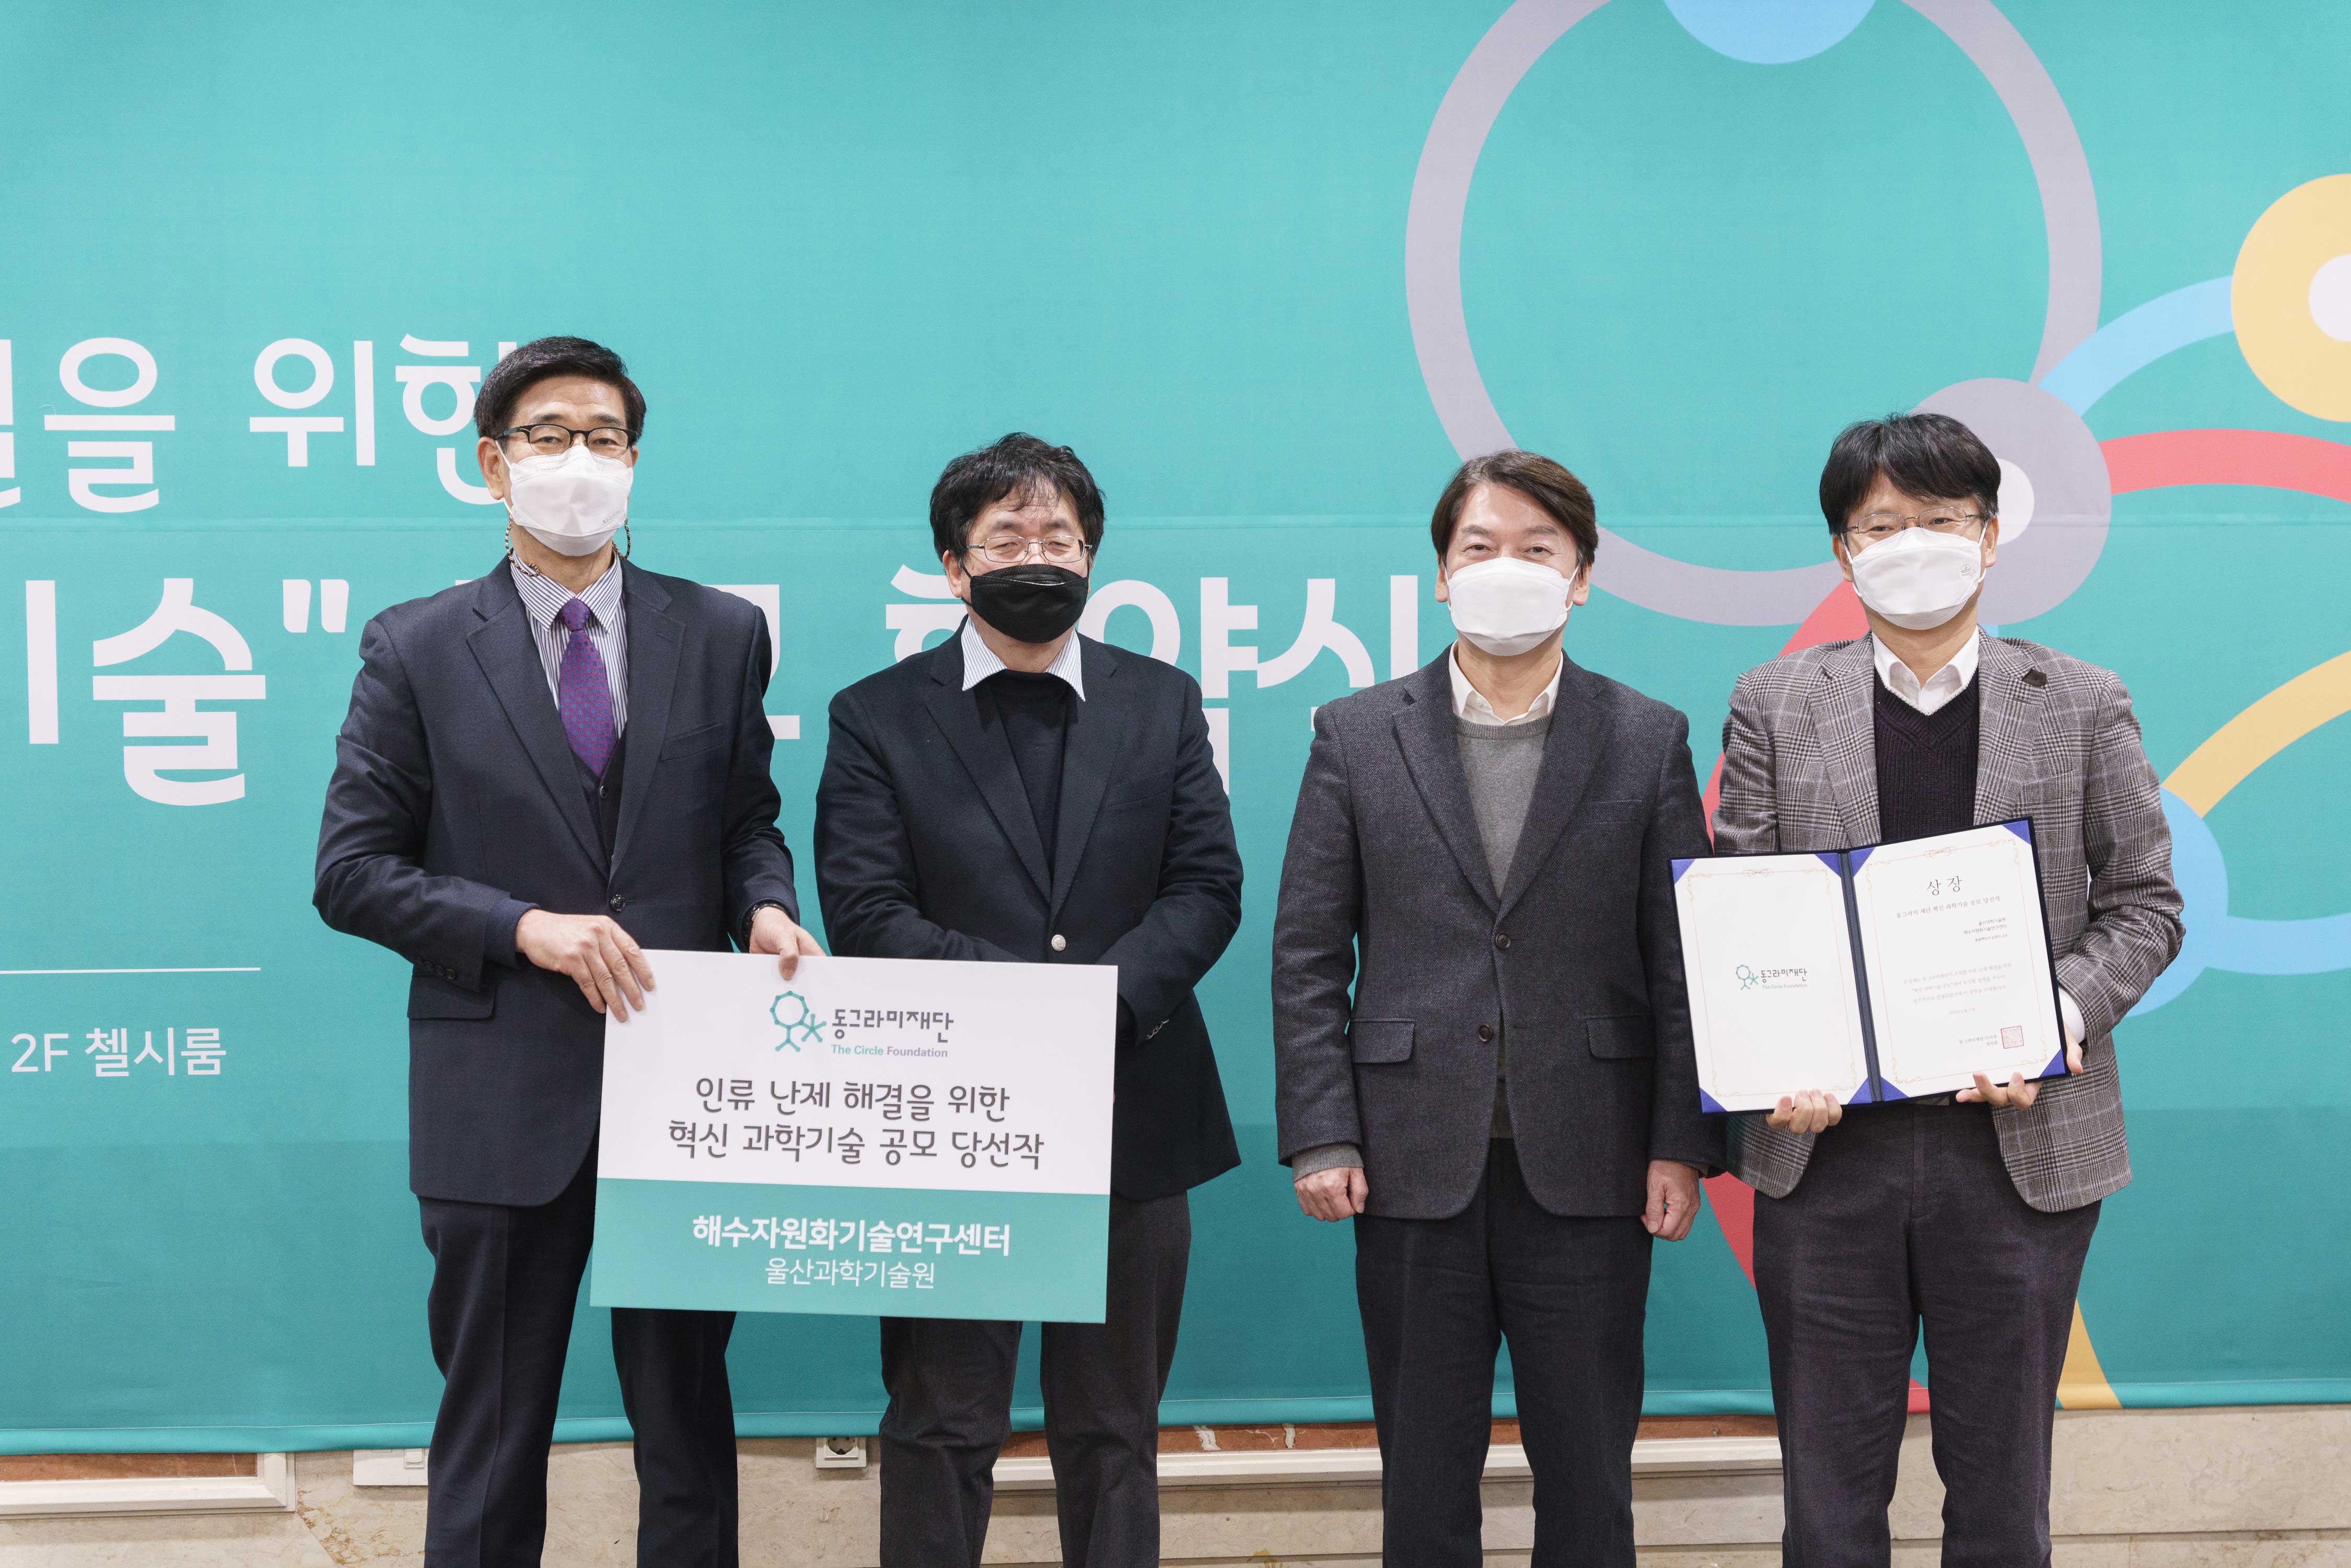 김영식 교수(오른쪽 끝)의 해수자원화기술센터도 과제에 선정됐다. | 사진: 동그라미재단 제공